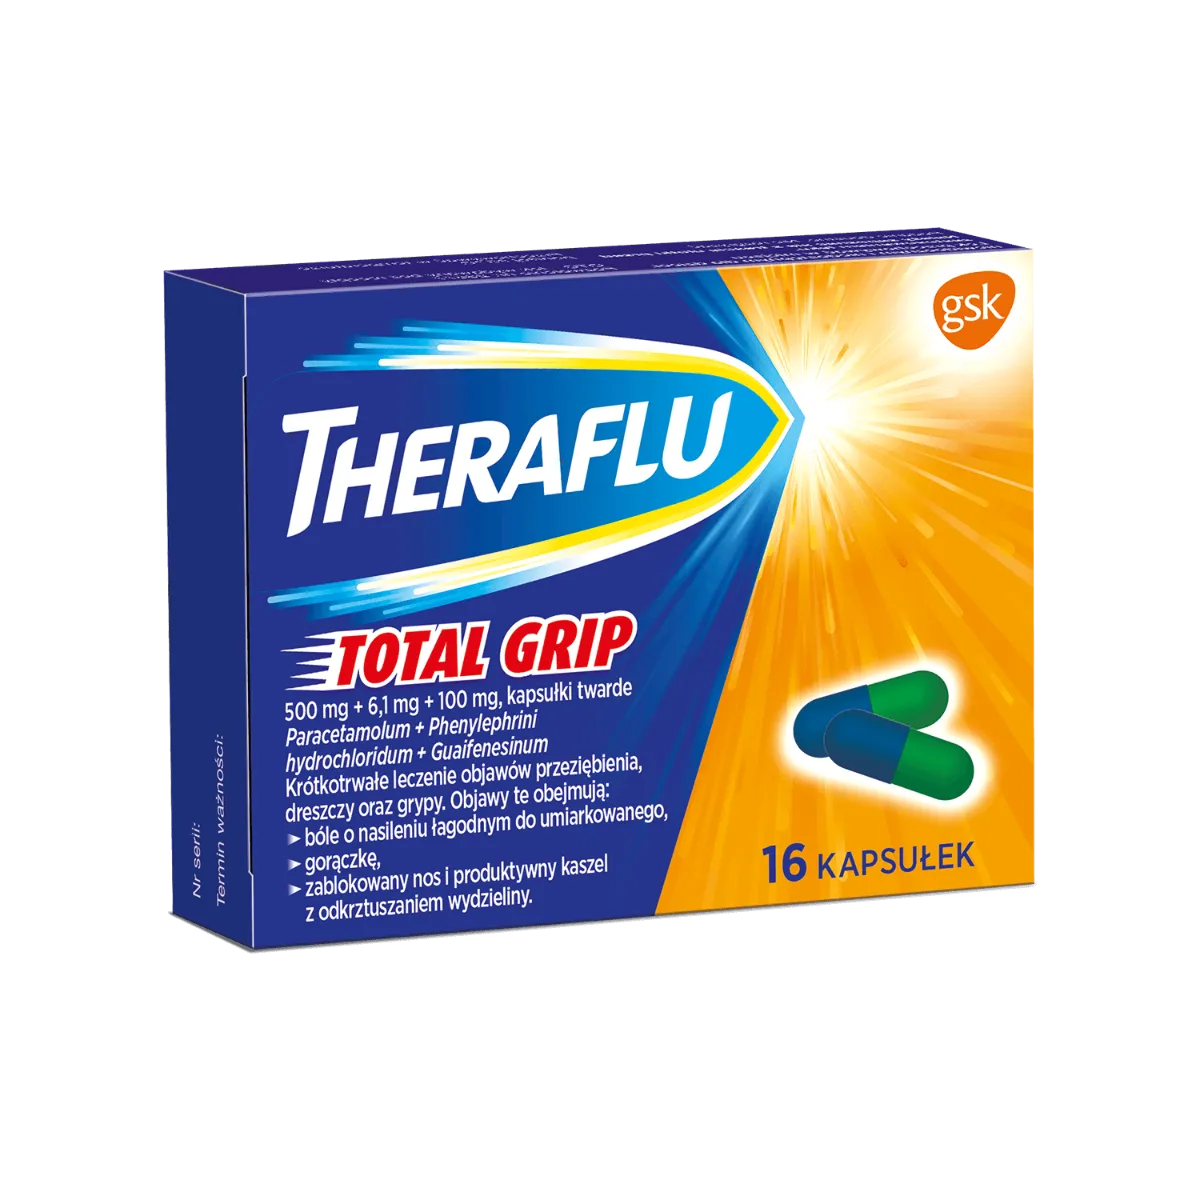 Theraflu Total Grip, lek stosowany do krótkotrwałego leczenia objawów przeziębienia, 16 kapsułek 